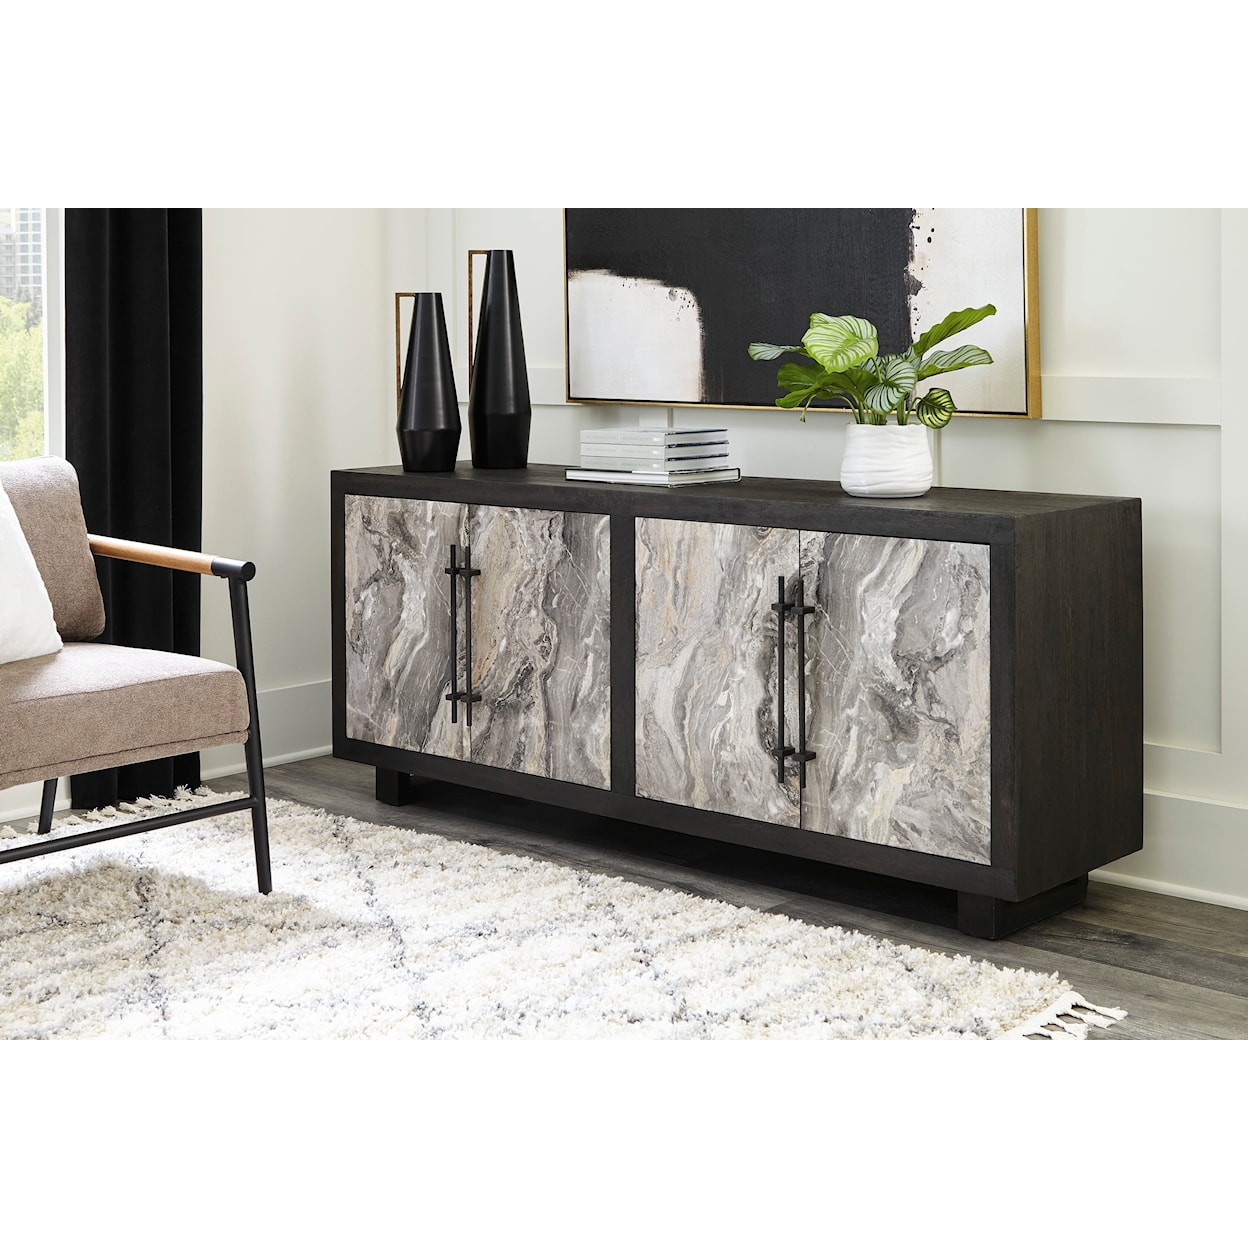 Ashley Furniture Signature Design Lakenwood Accent Cabinet